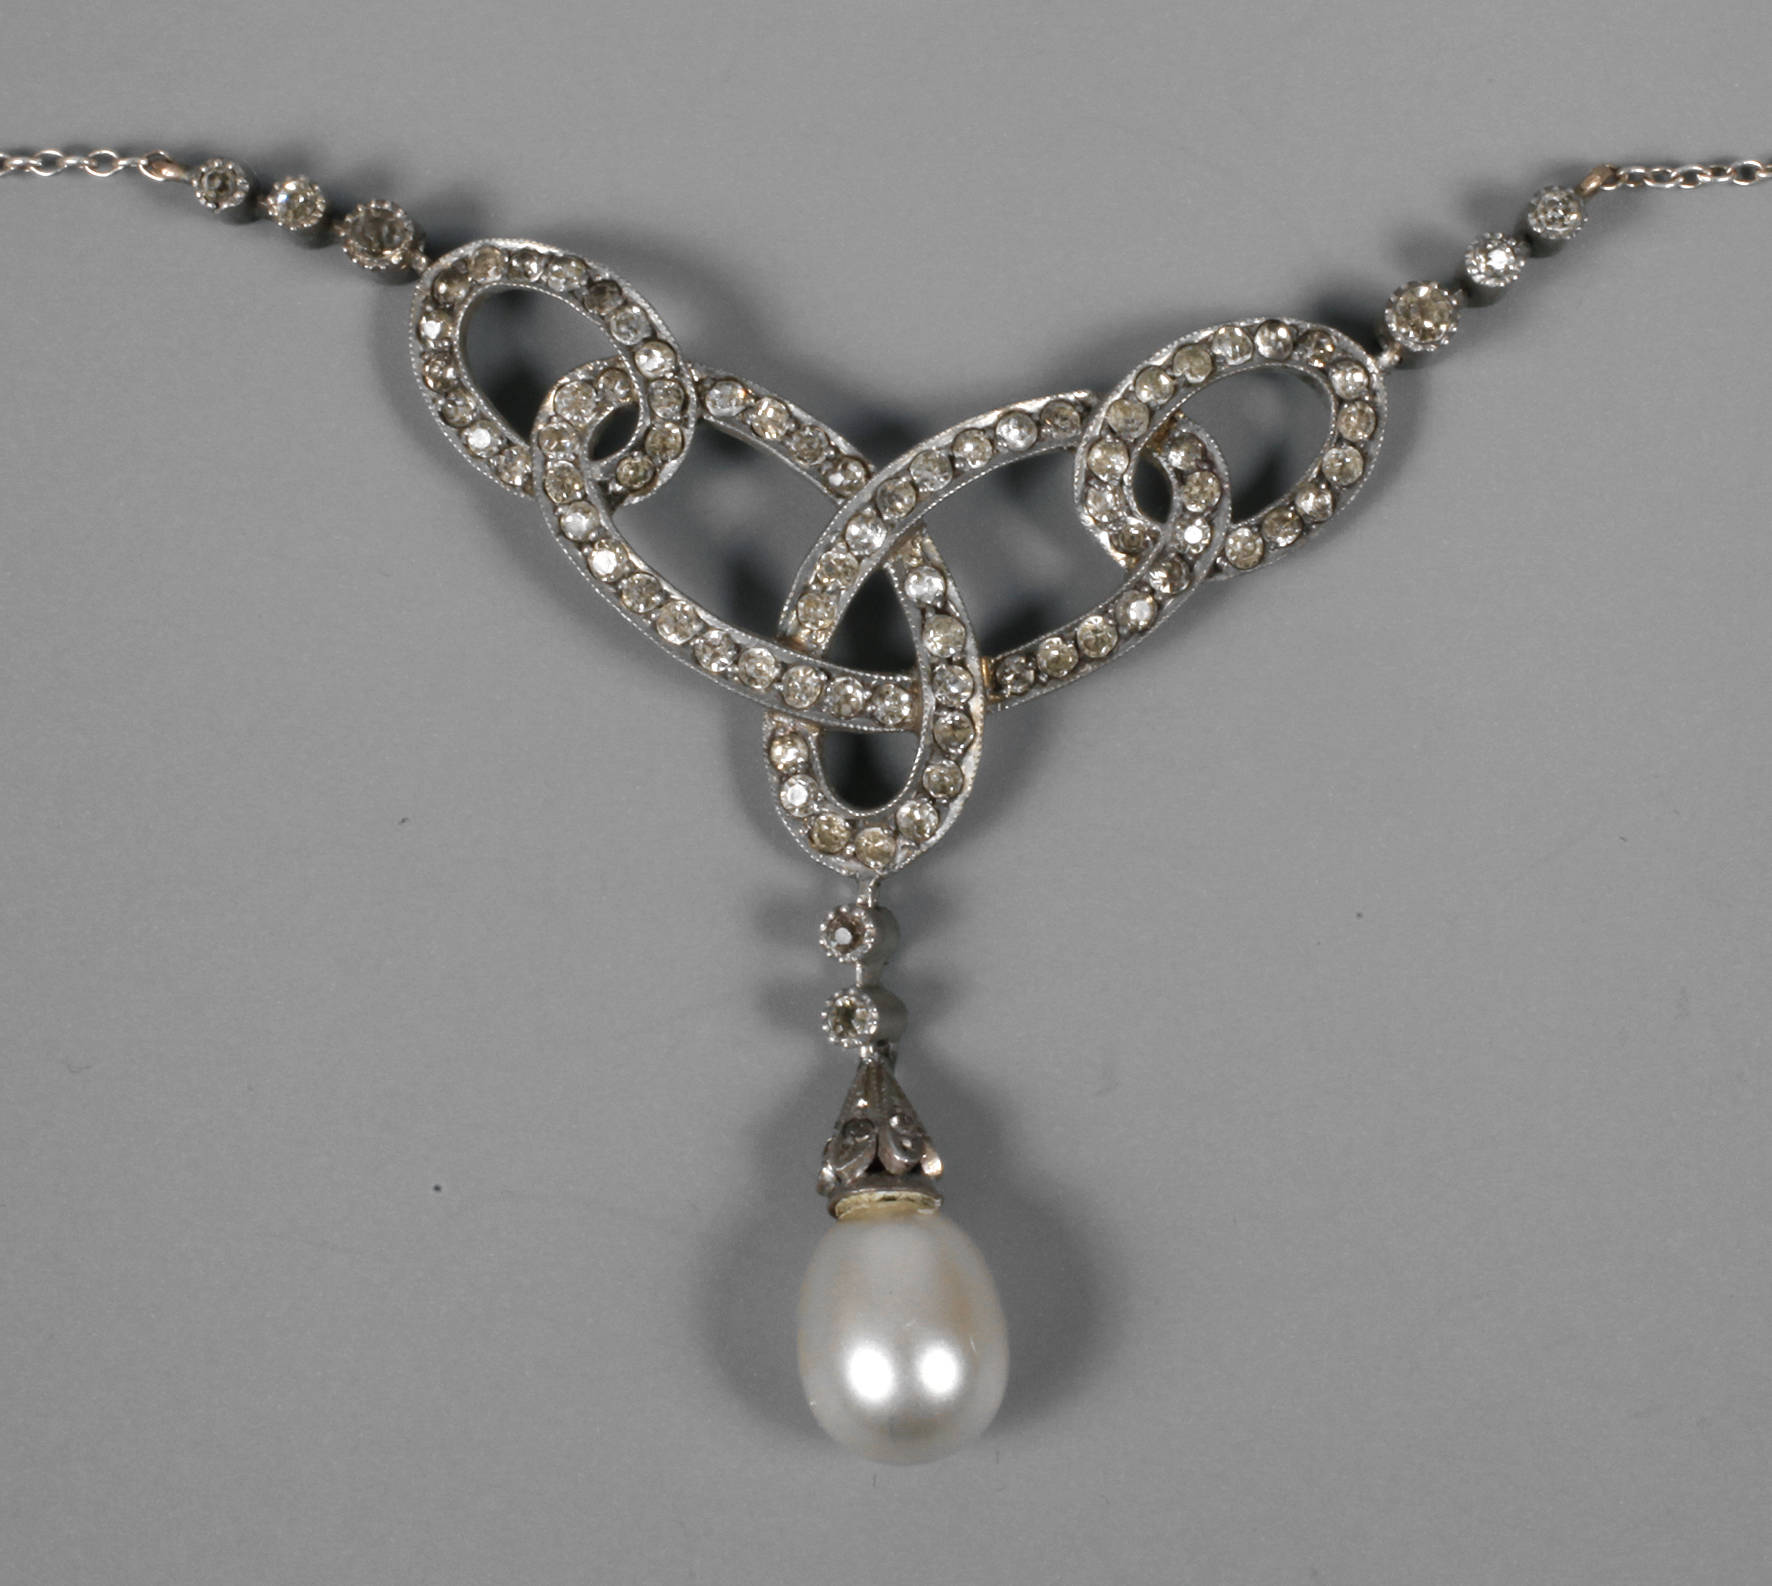 Jugendstil Collier mit Perle